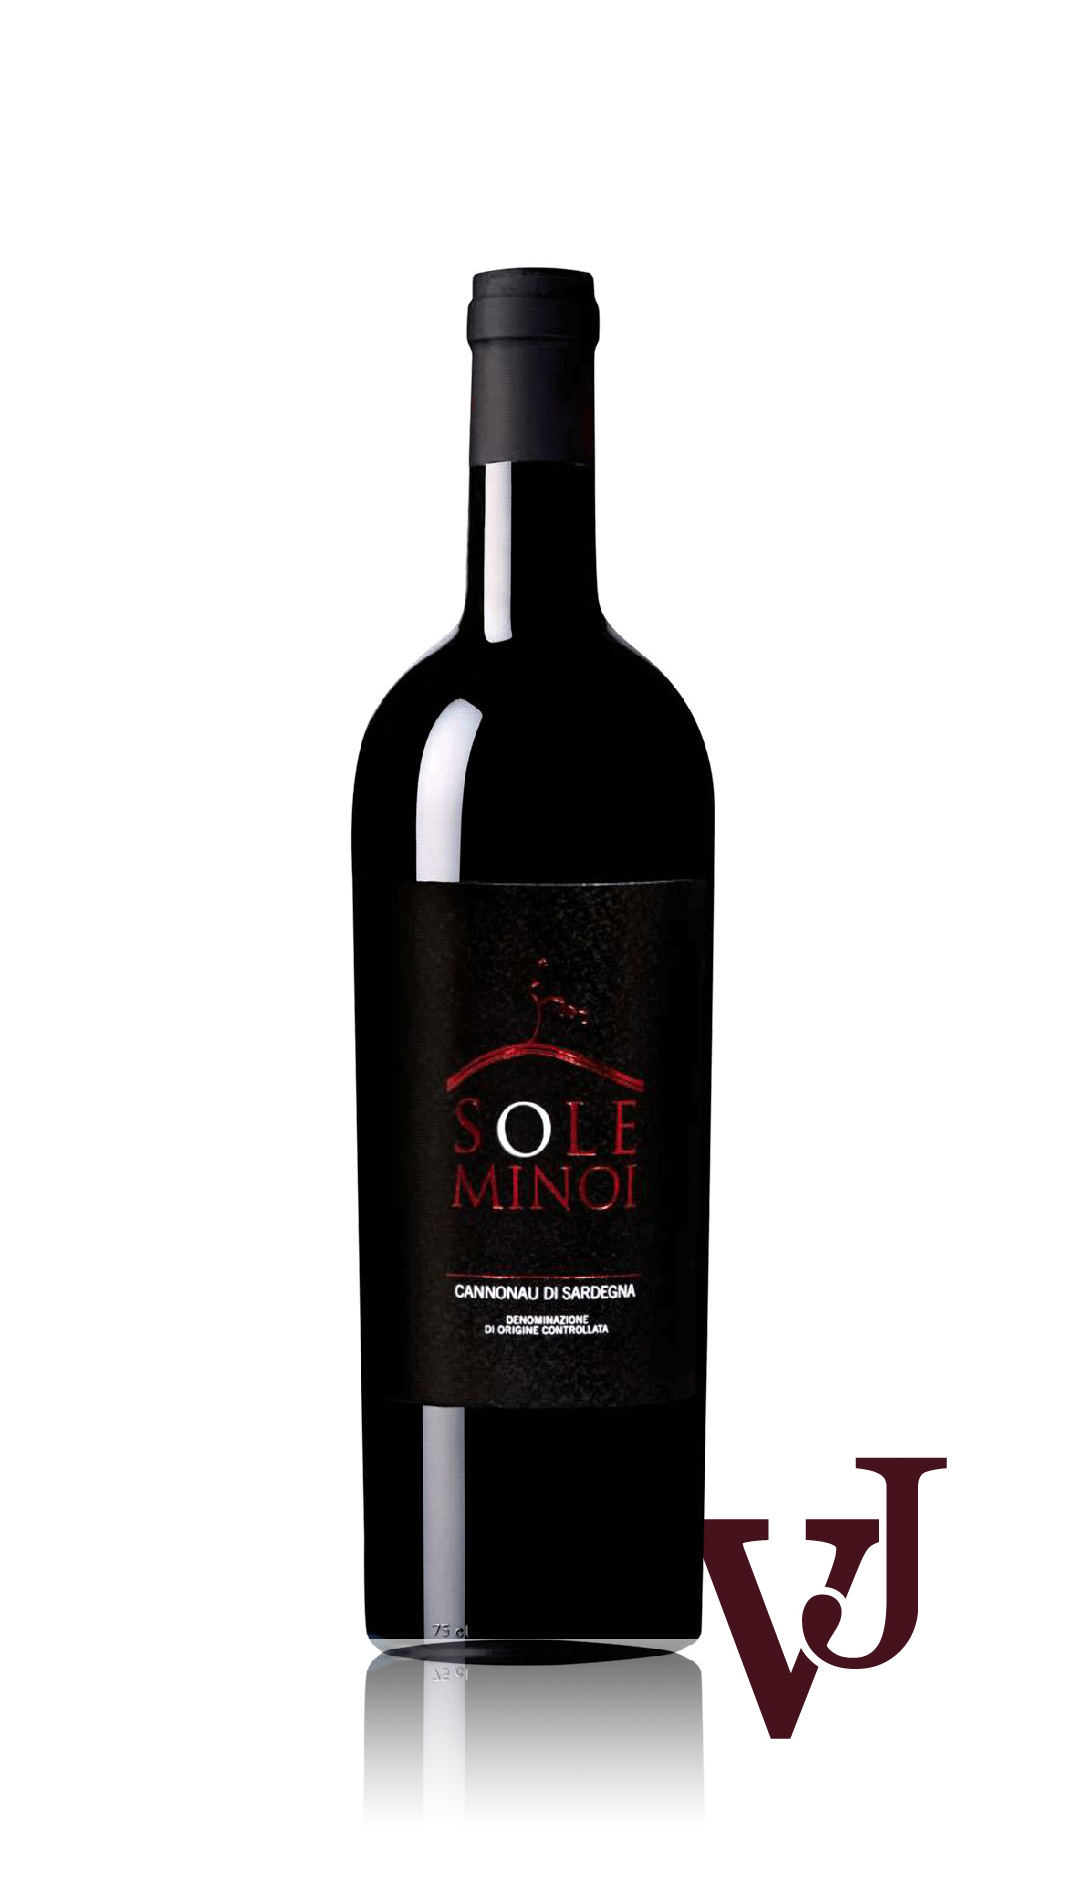 Rött Vin - Sole Minoi Cannonau de Sardegna 2019 artikel nummer 5922501 från producenten Giuseppe Lecis från området Italien